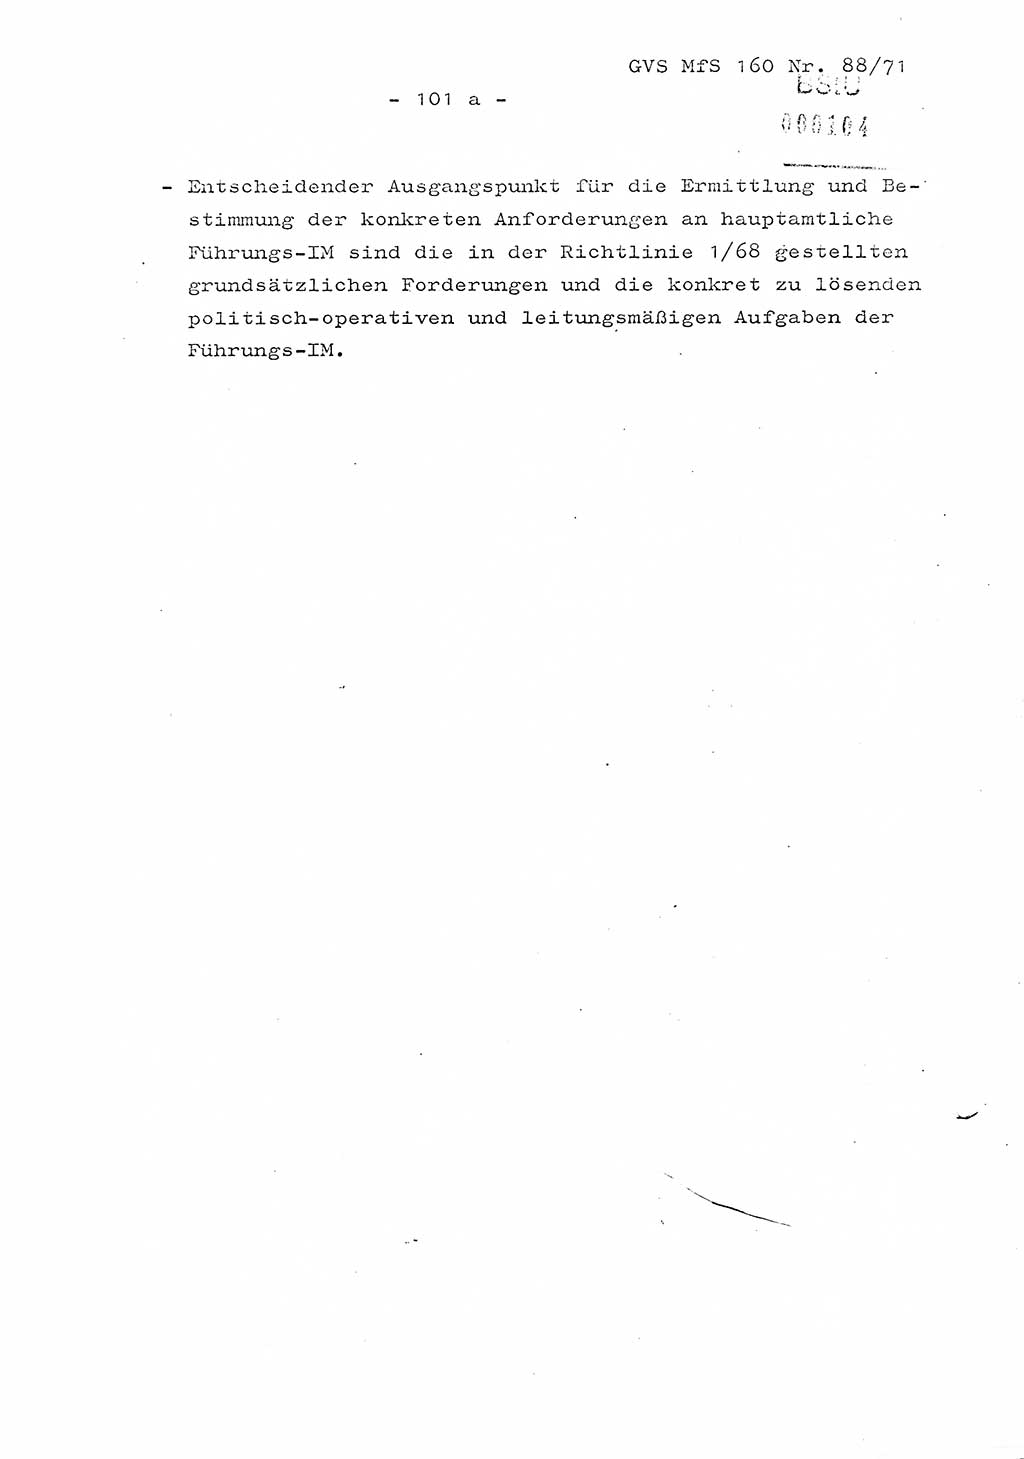 Dissertation Oberstleutnant Josef Schwarz (BV Schwerin), Major Fritz Amm (JHS), Hauptmann Peter Gräßler (JHS), Ministerium für Staatssicherheit (MfS) [Deutsche Demokratische Republik (DDR)], Juristische Hochschule (JHS), Geheime Verschlußsache (GVS) 160-88/71, Potsdam 1972, Seite 101/1 (Diss. MfS DDR JHS GVS 160-88/71 1972, S. 101/1)